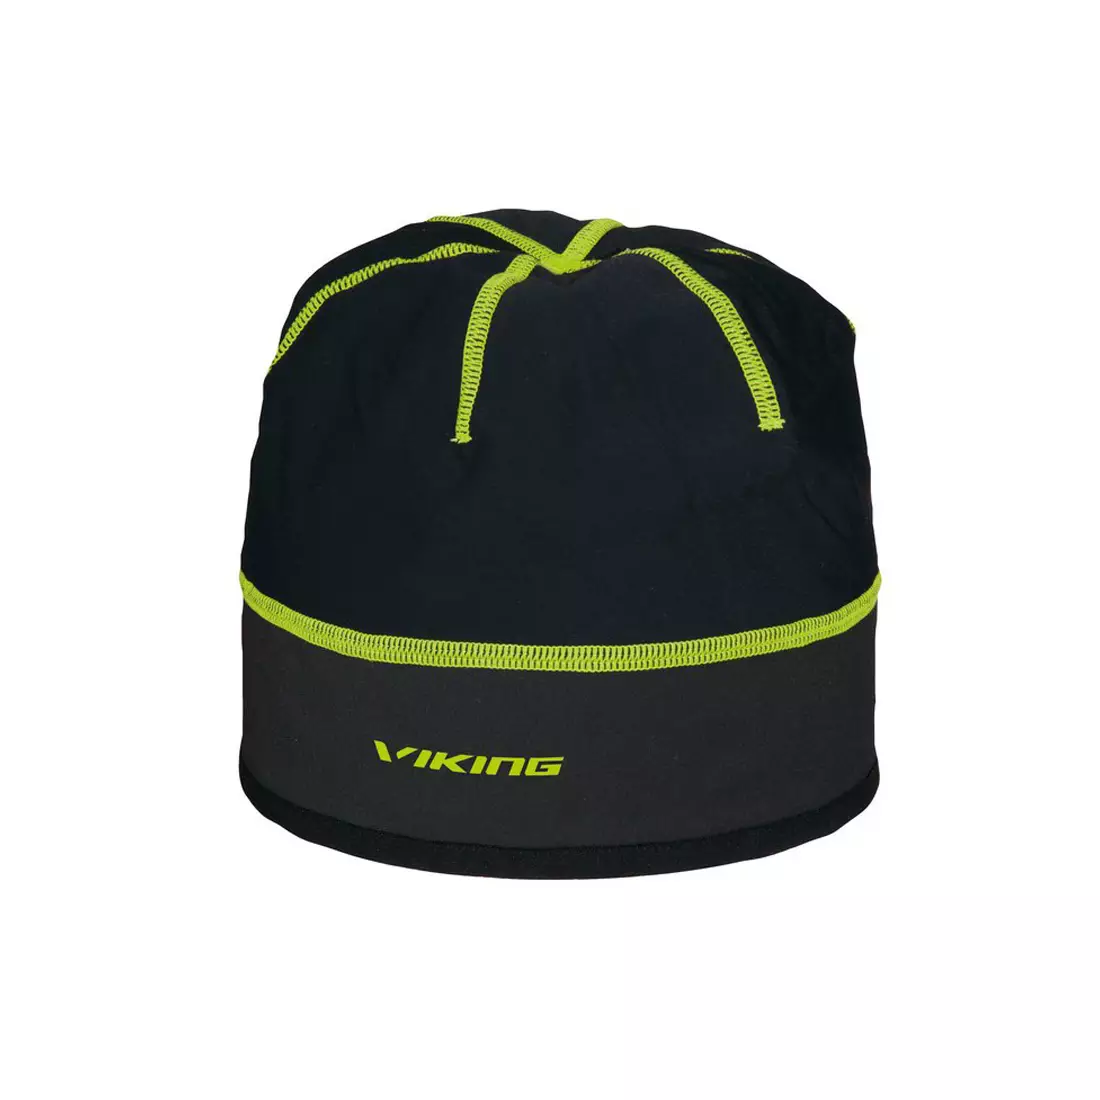 VIKING pălărie universală de iarnă Palmer GORE-TEX Infinium z Windstopper black-yellow 215/16/2016/64/58